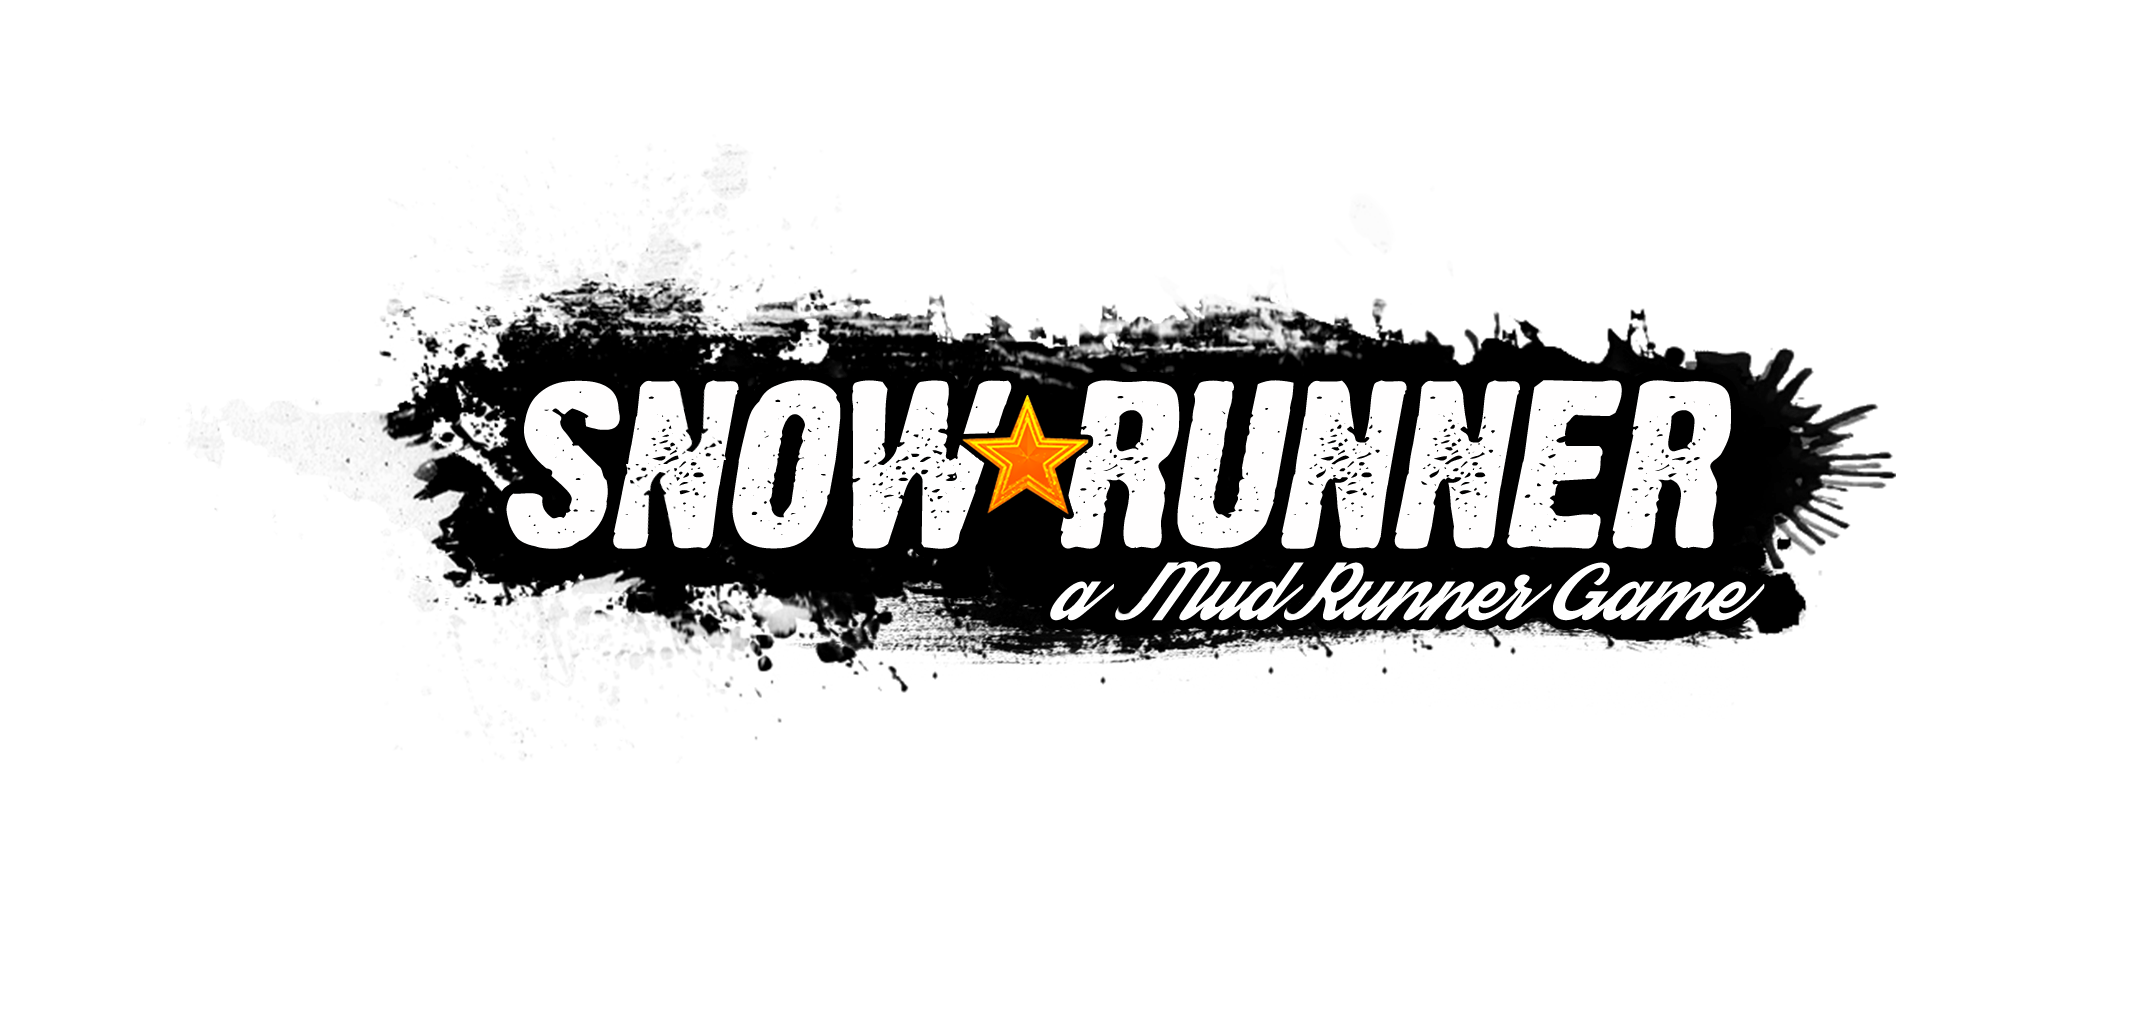 Snowrunner fix online coop через стим фото 47